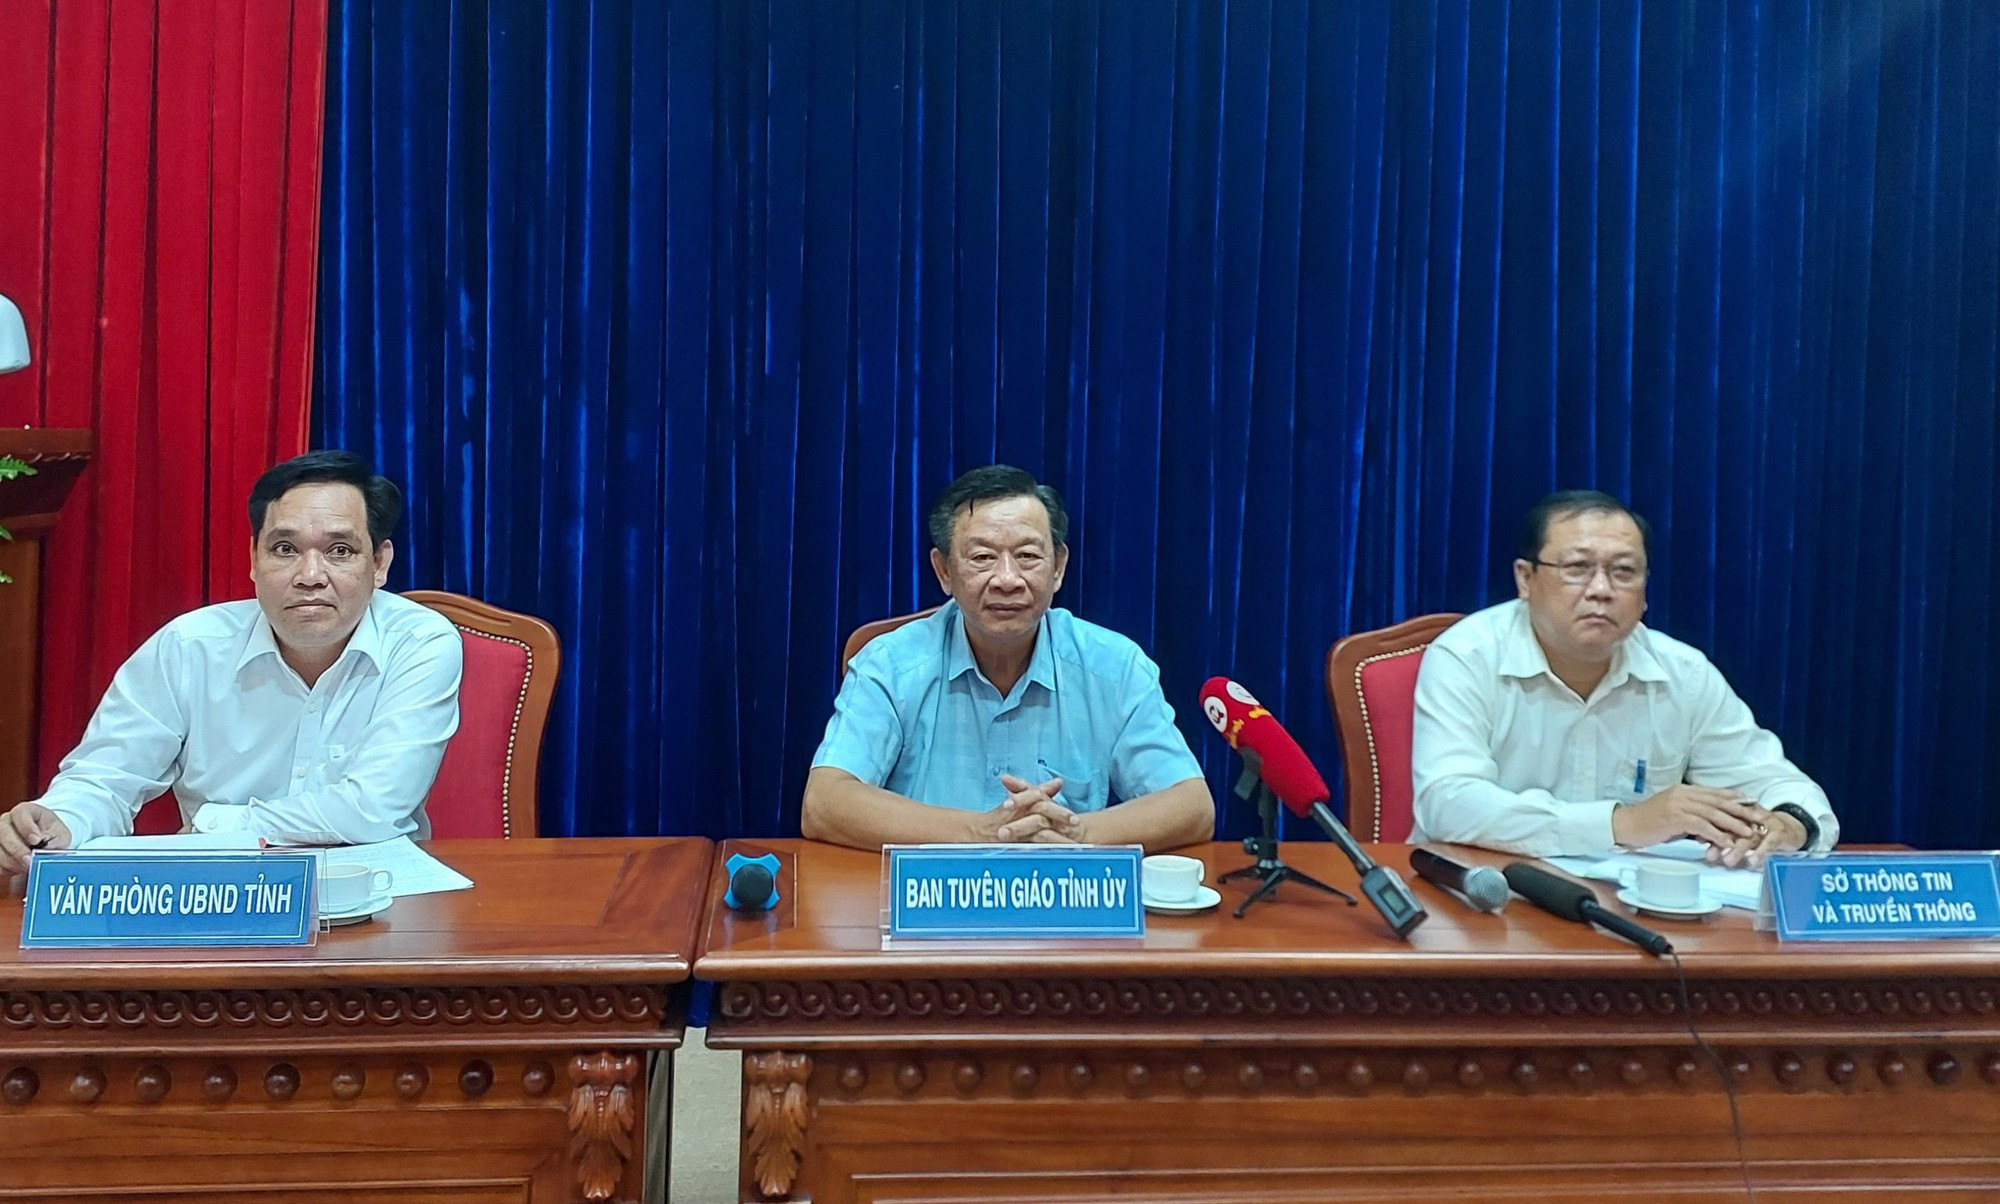 Ông Hồ Trung Việt - Trưởng ban Tuyên giáo Tỉnh ủy Cà Mau (giữa) chủ trì buổi họp báo về đoạn clip nghi vấn Phó Chủ tịch huyện mặc cả